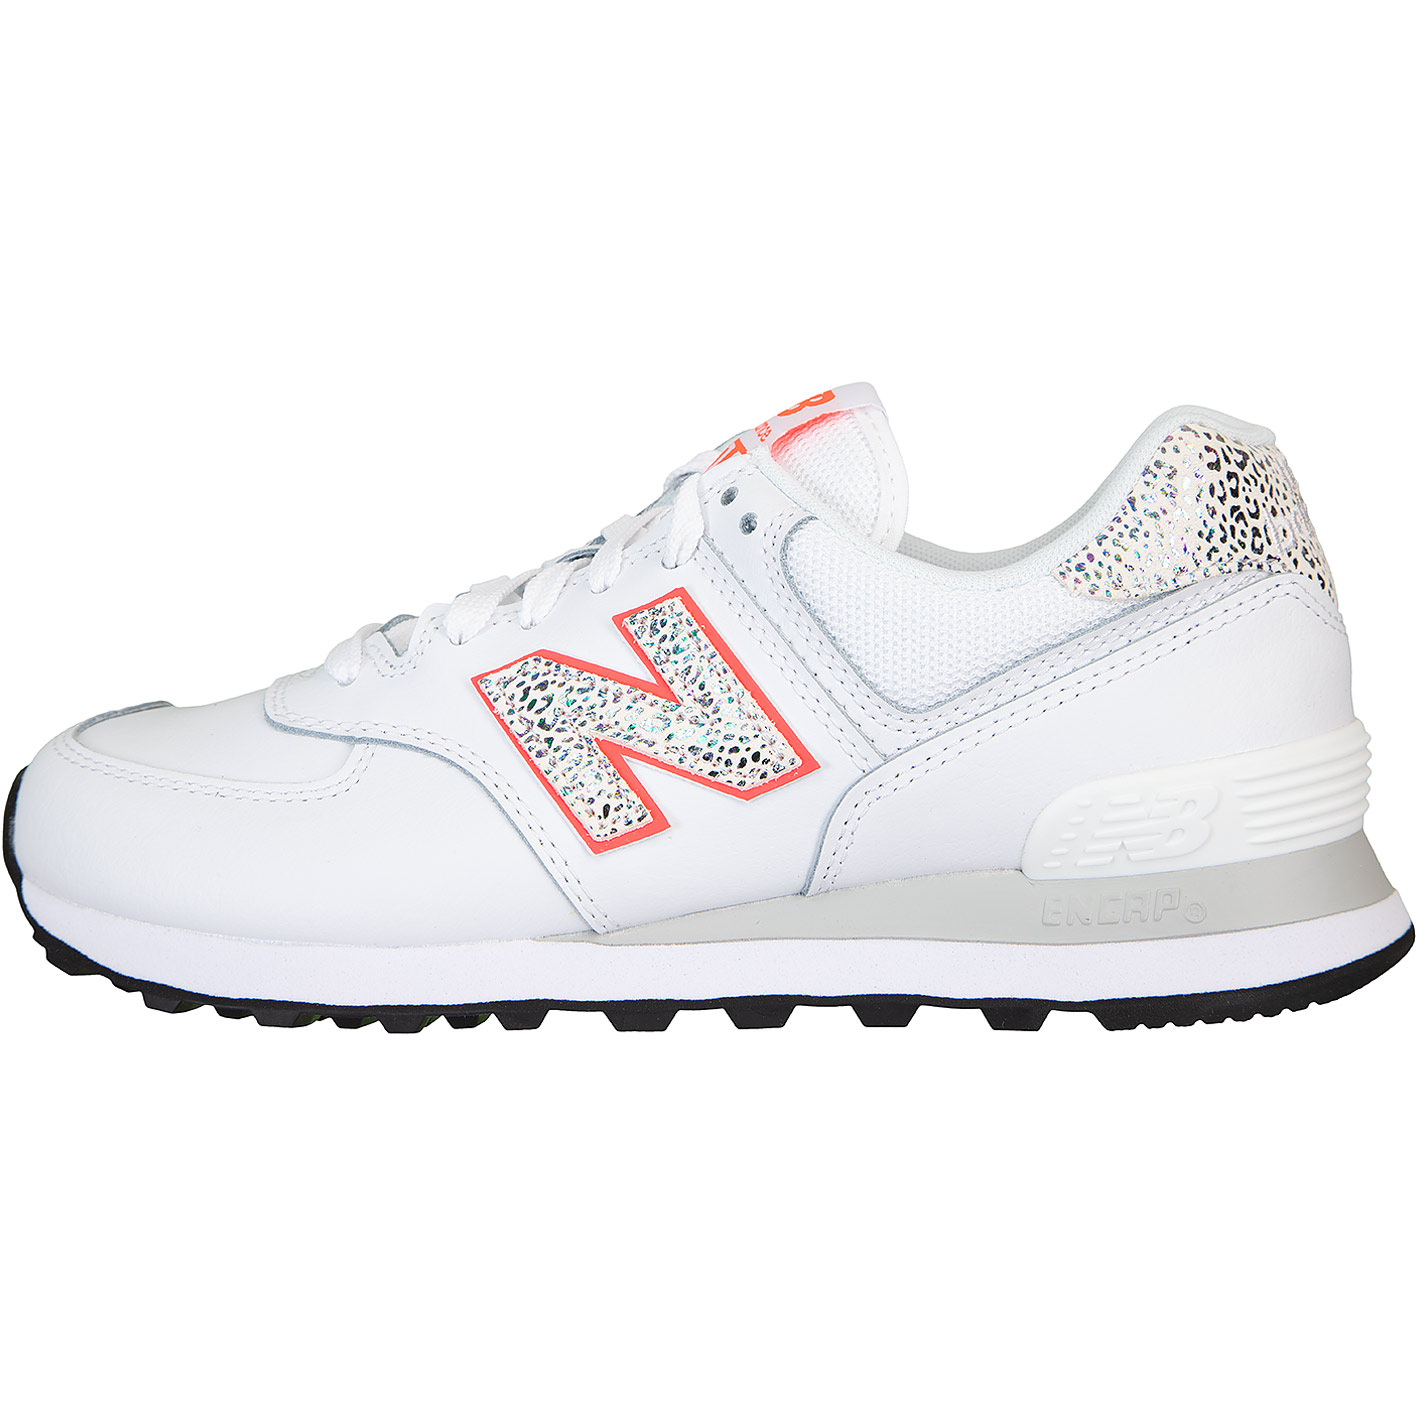 ☆ New Balance NB 574 Damen Sneaker weiß - hier bestellen!